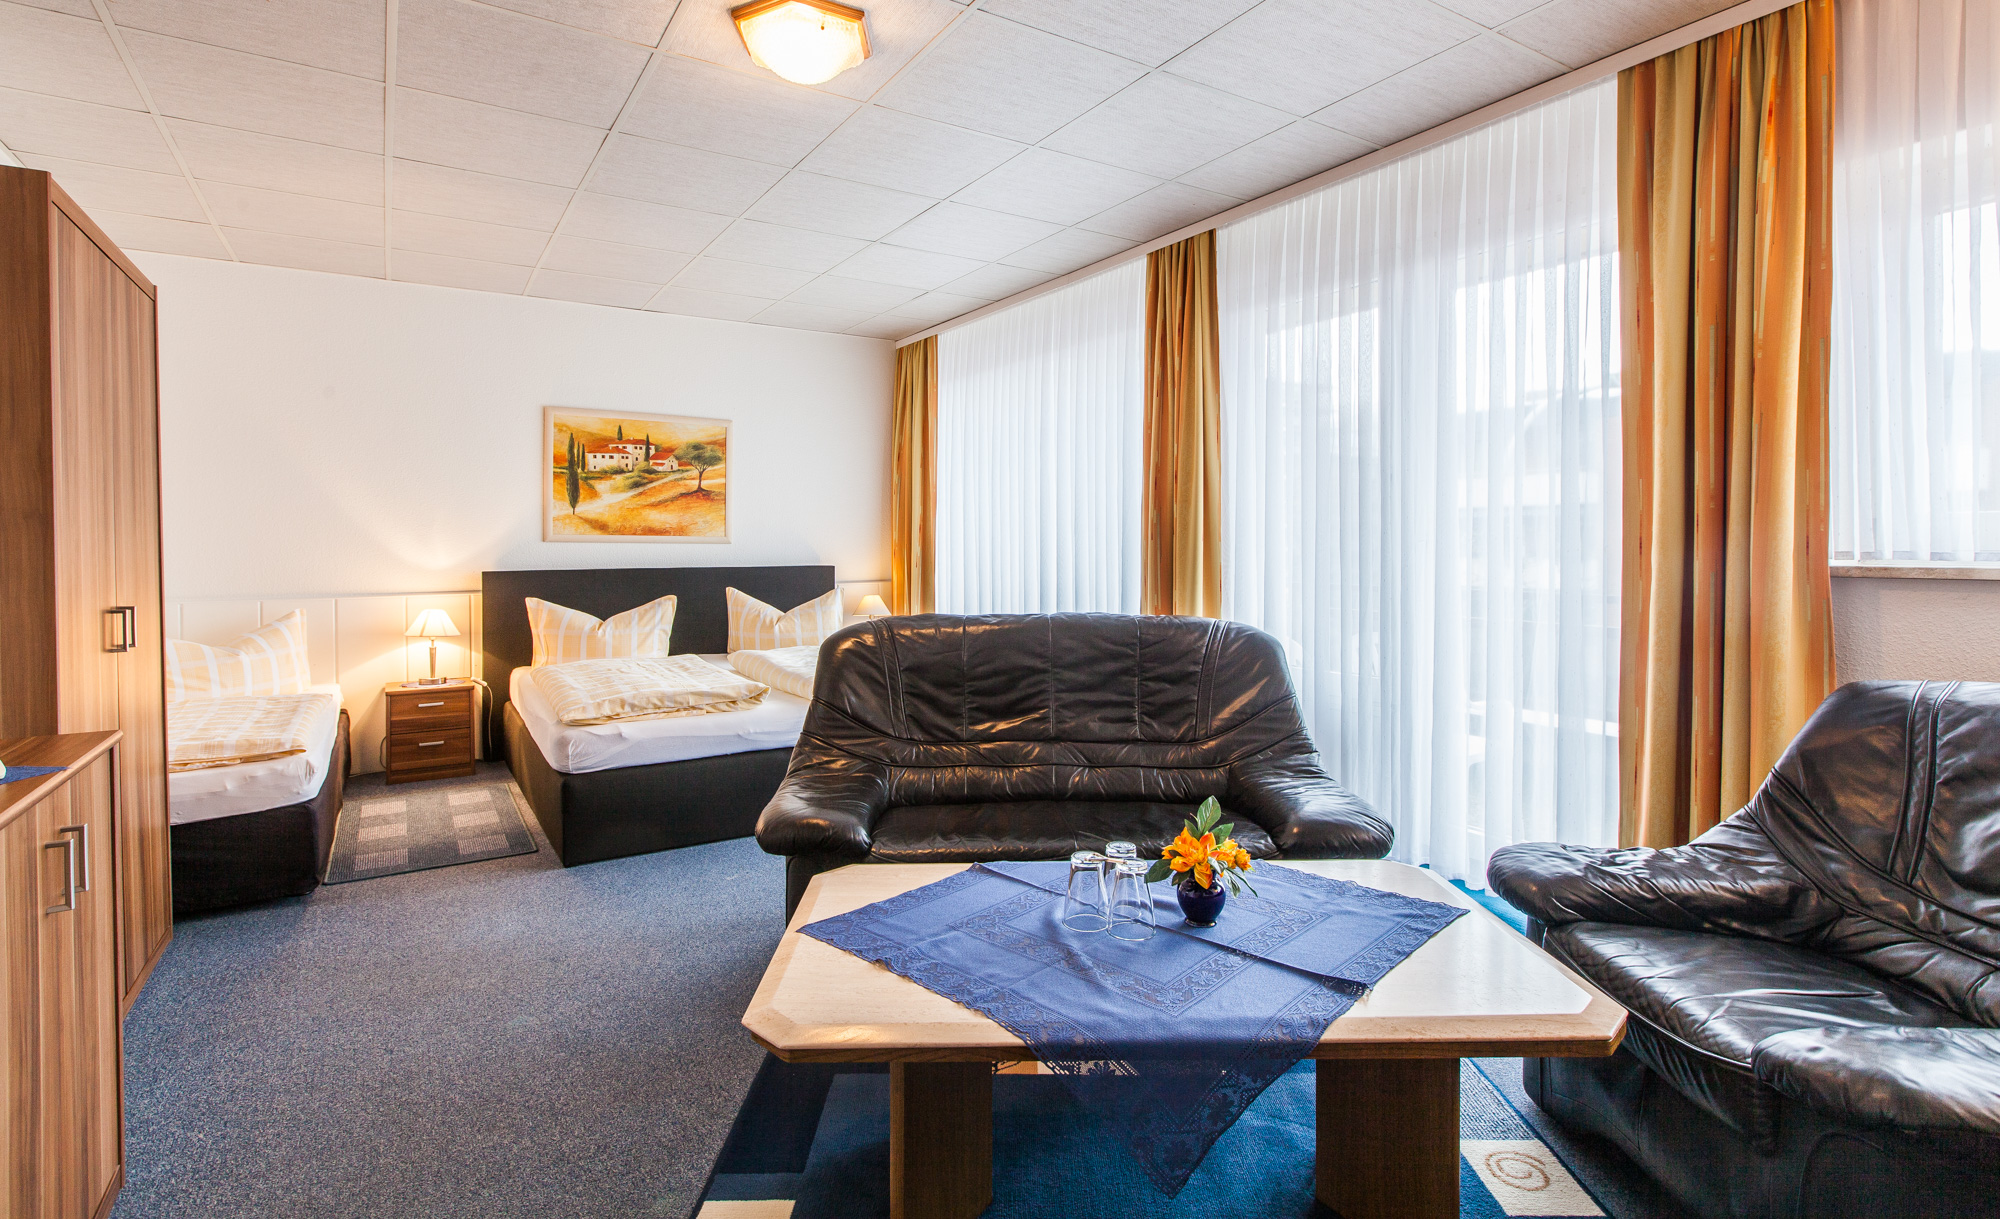 Dreibettzimmer im Hotel Quellental in Pinneberg bei Hamburg